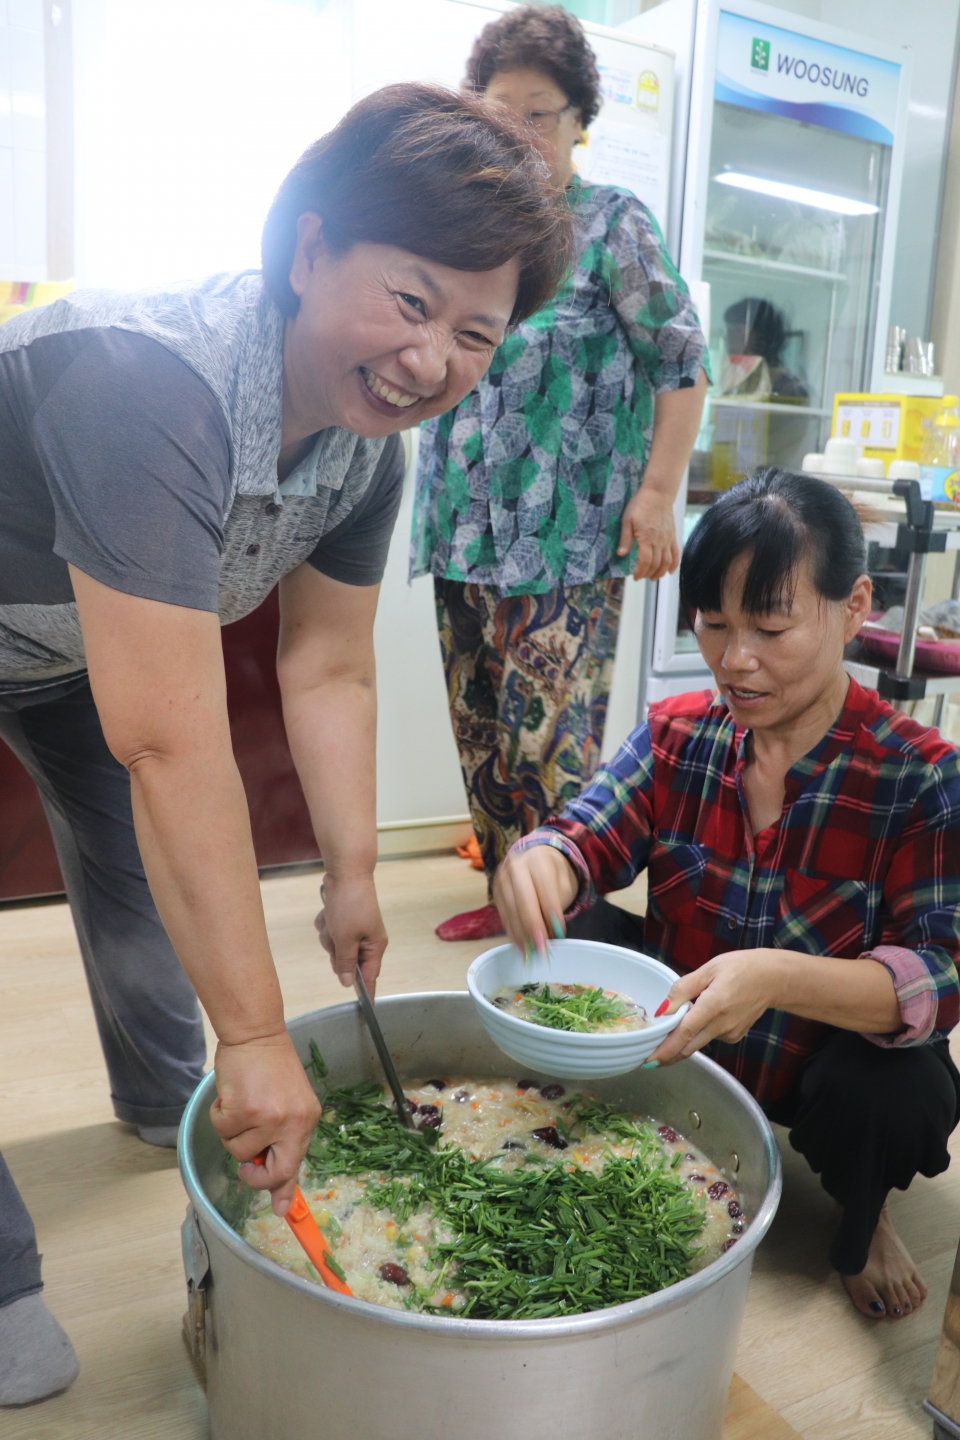 최경옥(55)씨와 이이숙(54)씨가 그릇에 닭죽을 옮겨 담고 있다. 초록색의 정구지(부추의 방언)가 입맛을 돋운다.